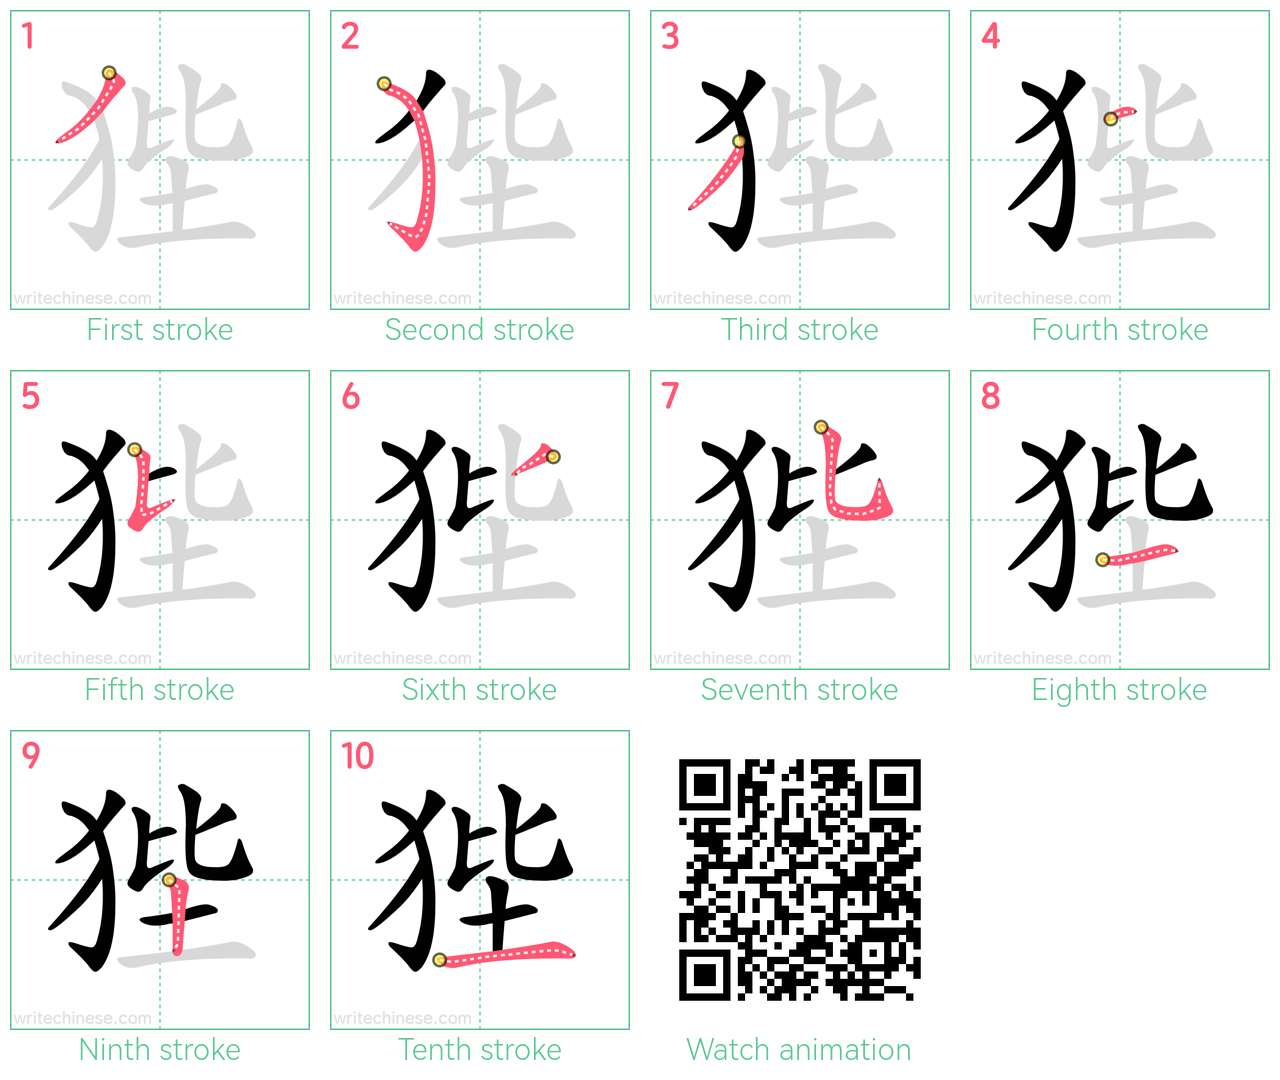 狴 step-by-step stroke order diagrams